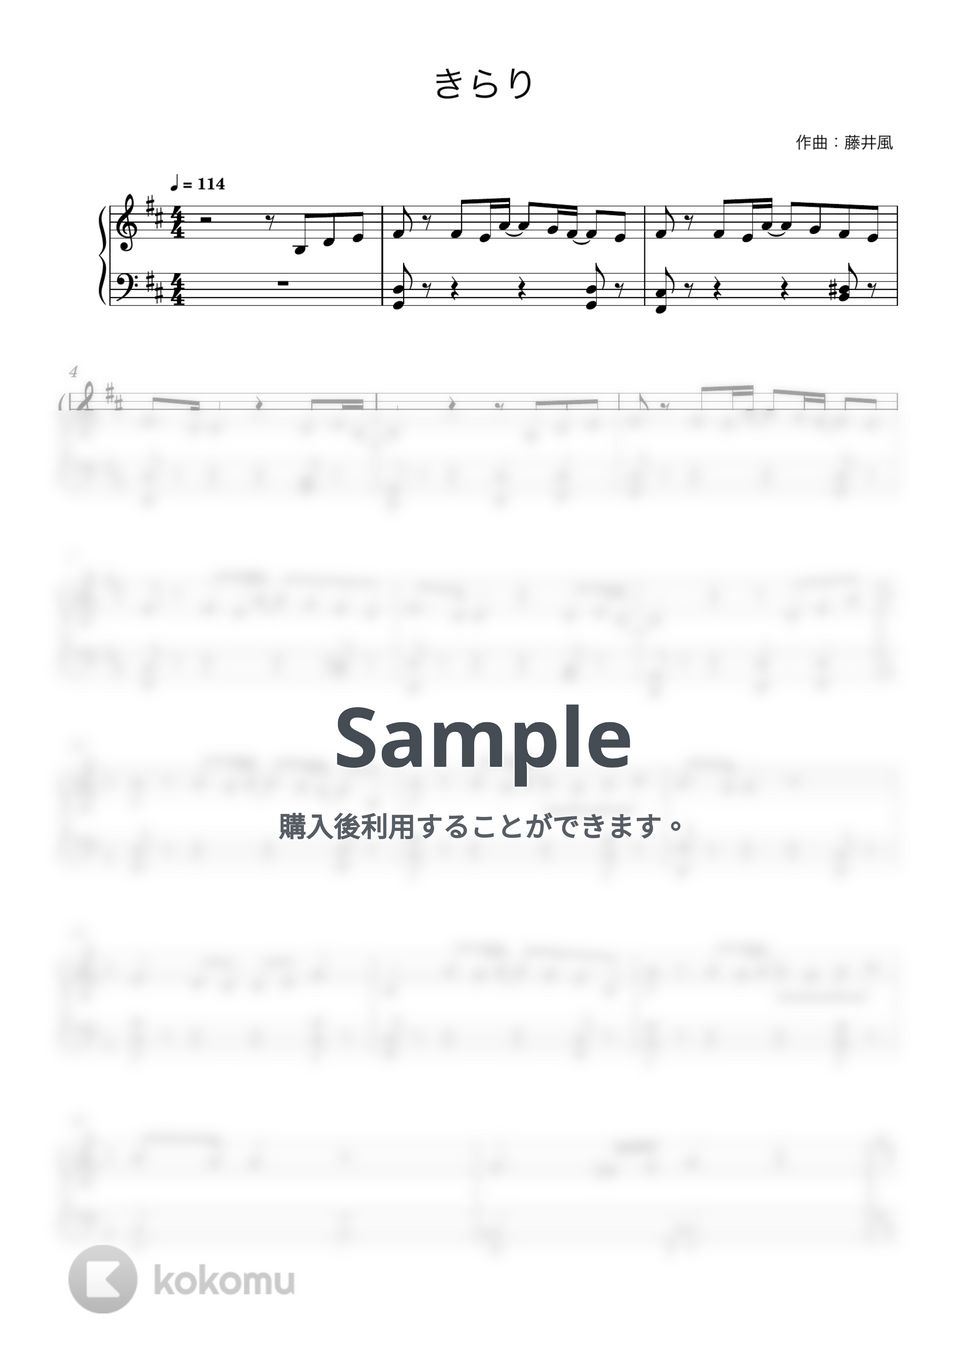 藤井風 - きらり (ピアノ初心者向け) by Piano Lovers. jp